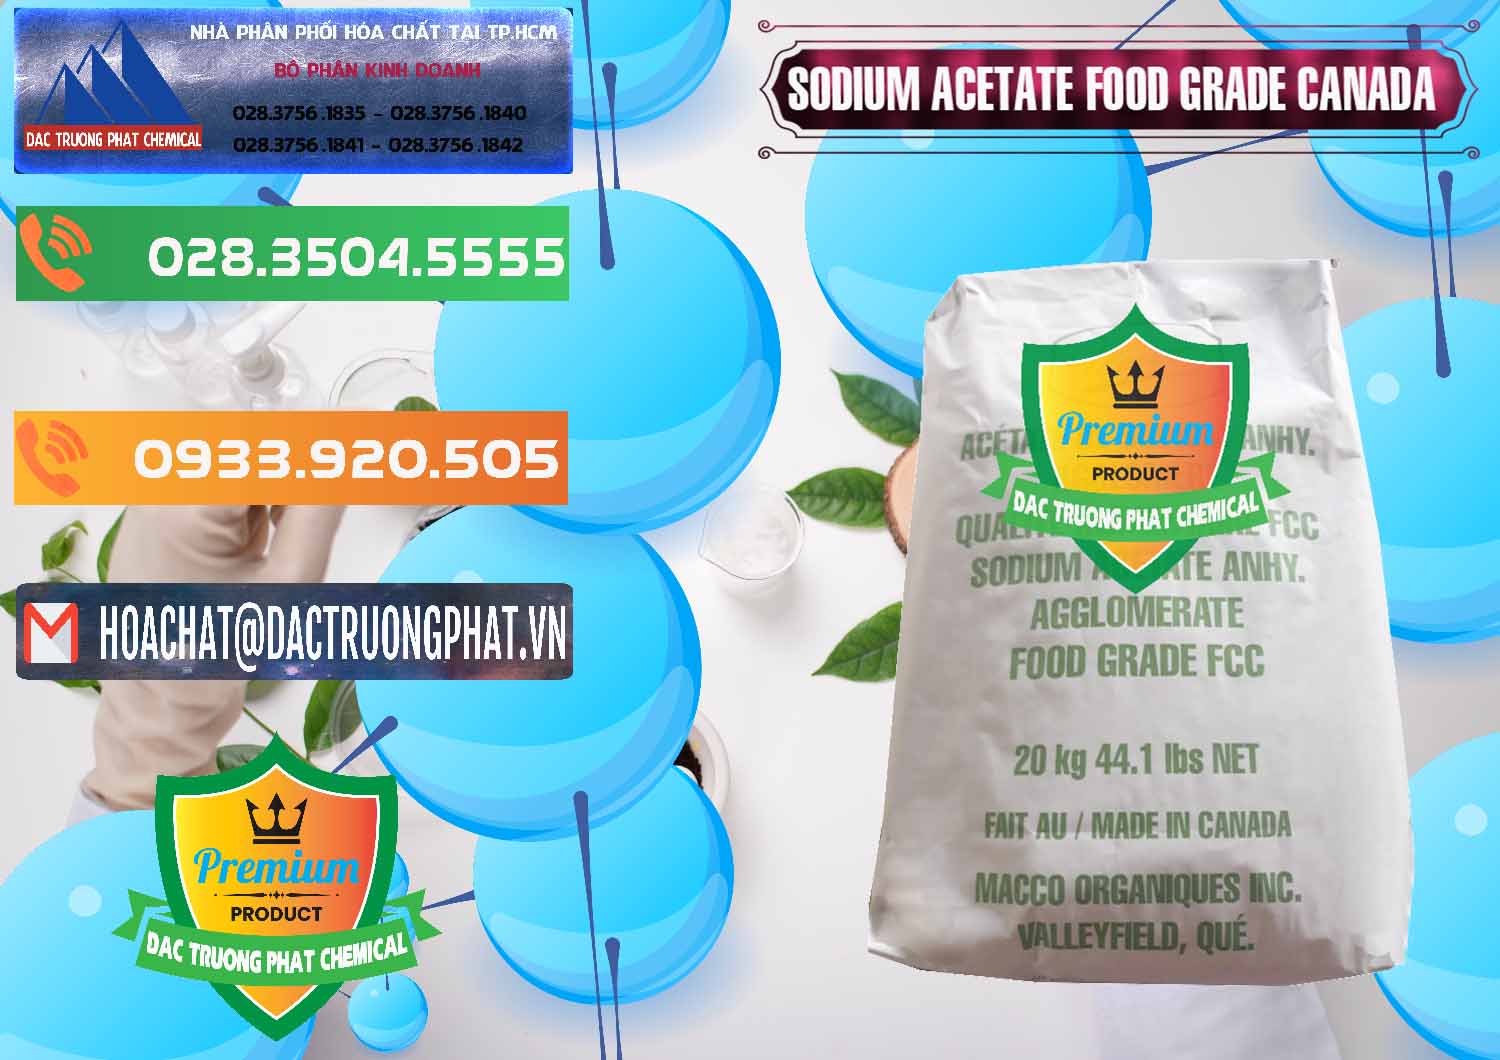 Chuyên bán ( cung cấp ) Sodium Acetate - Natri Acetate Food Grade Canada - 0282 - Chuyên kinh doanh - cung cấp hóa chất tại TP.HCM - hoachatxulynuoc.com.vn